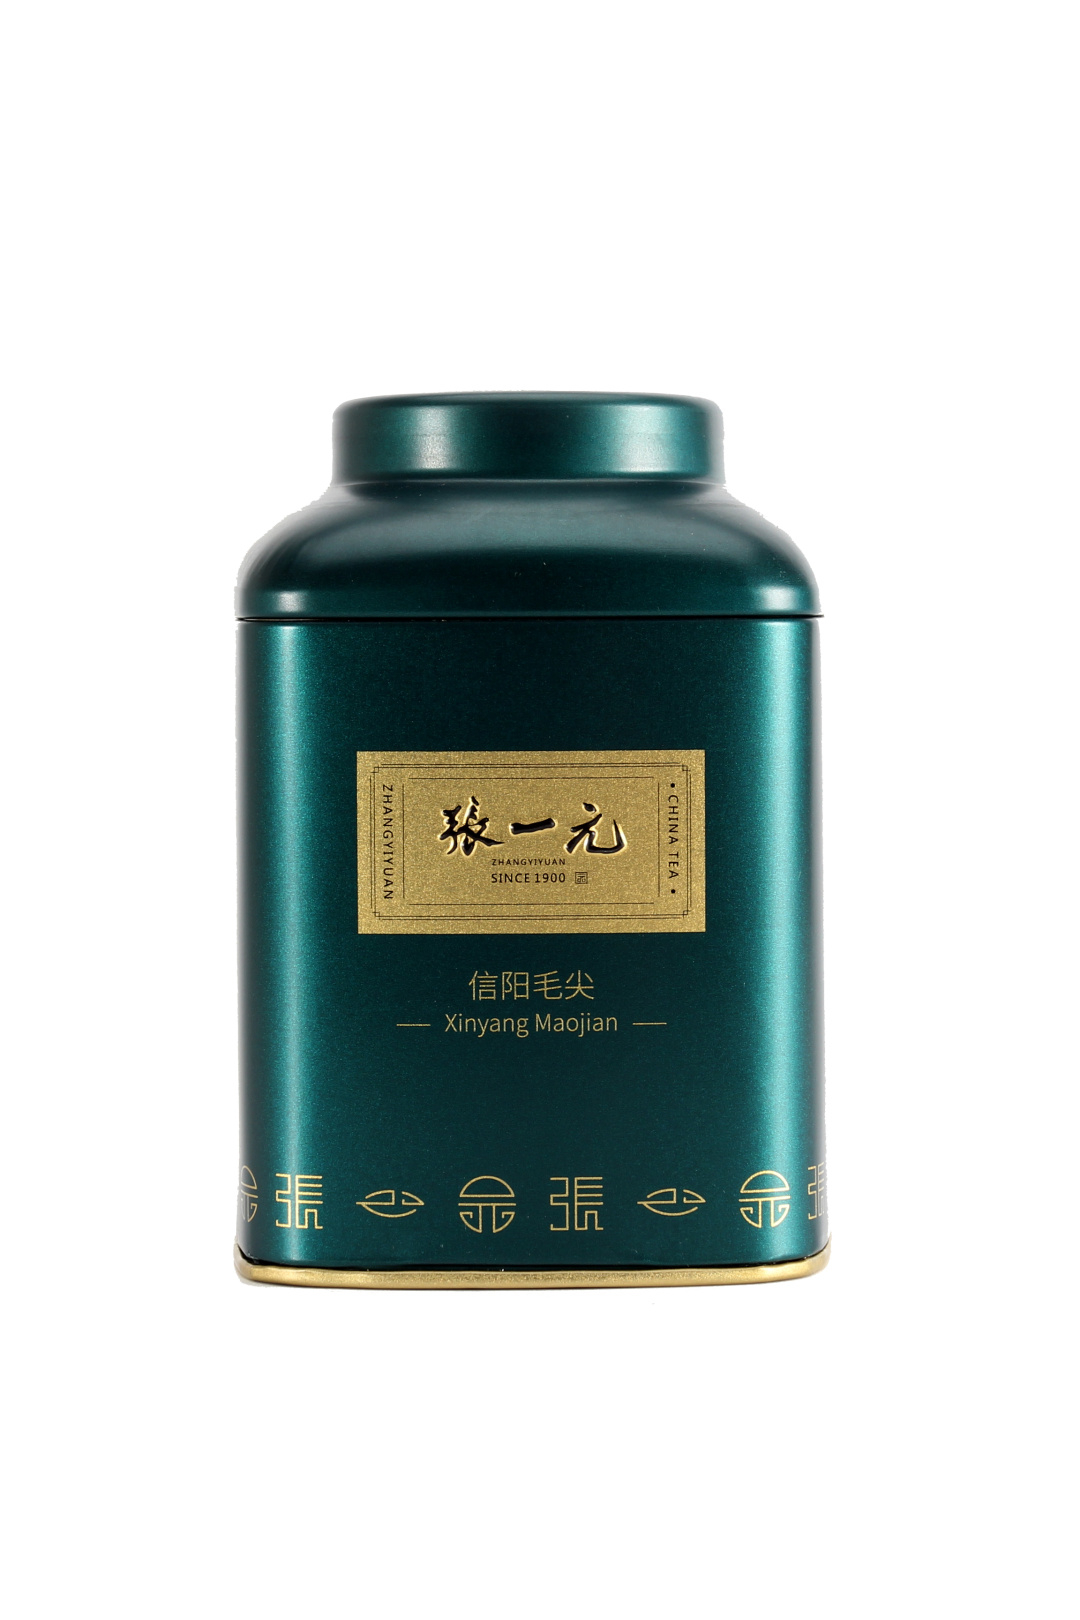 【绿茶展卖季 包邮】张一元茶叶 经典系列 绿茶 信阳毛尖 桶装 40g